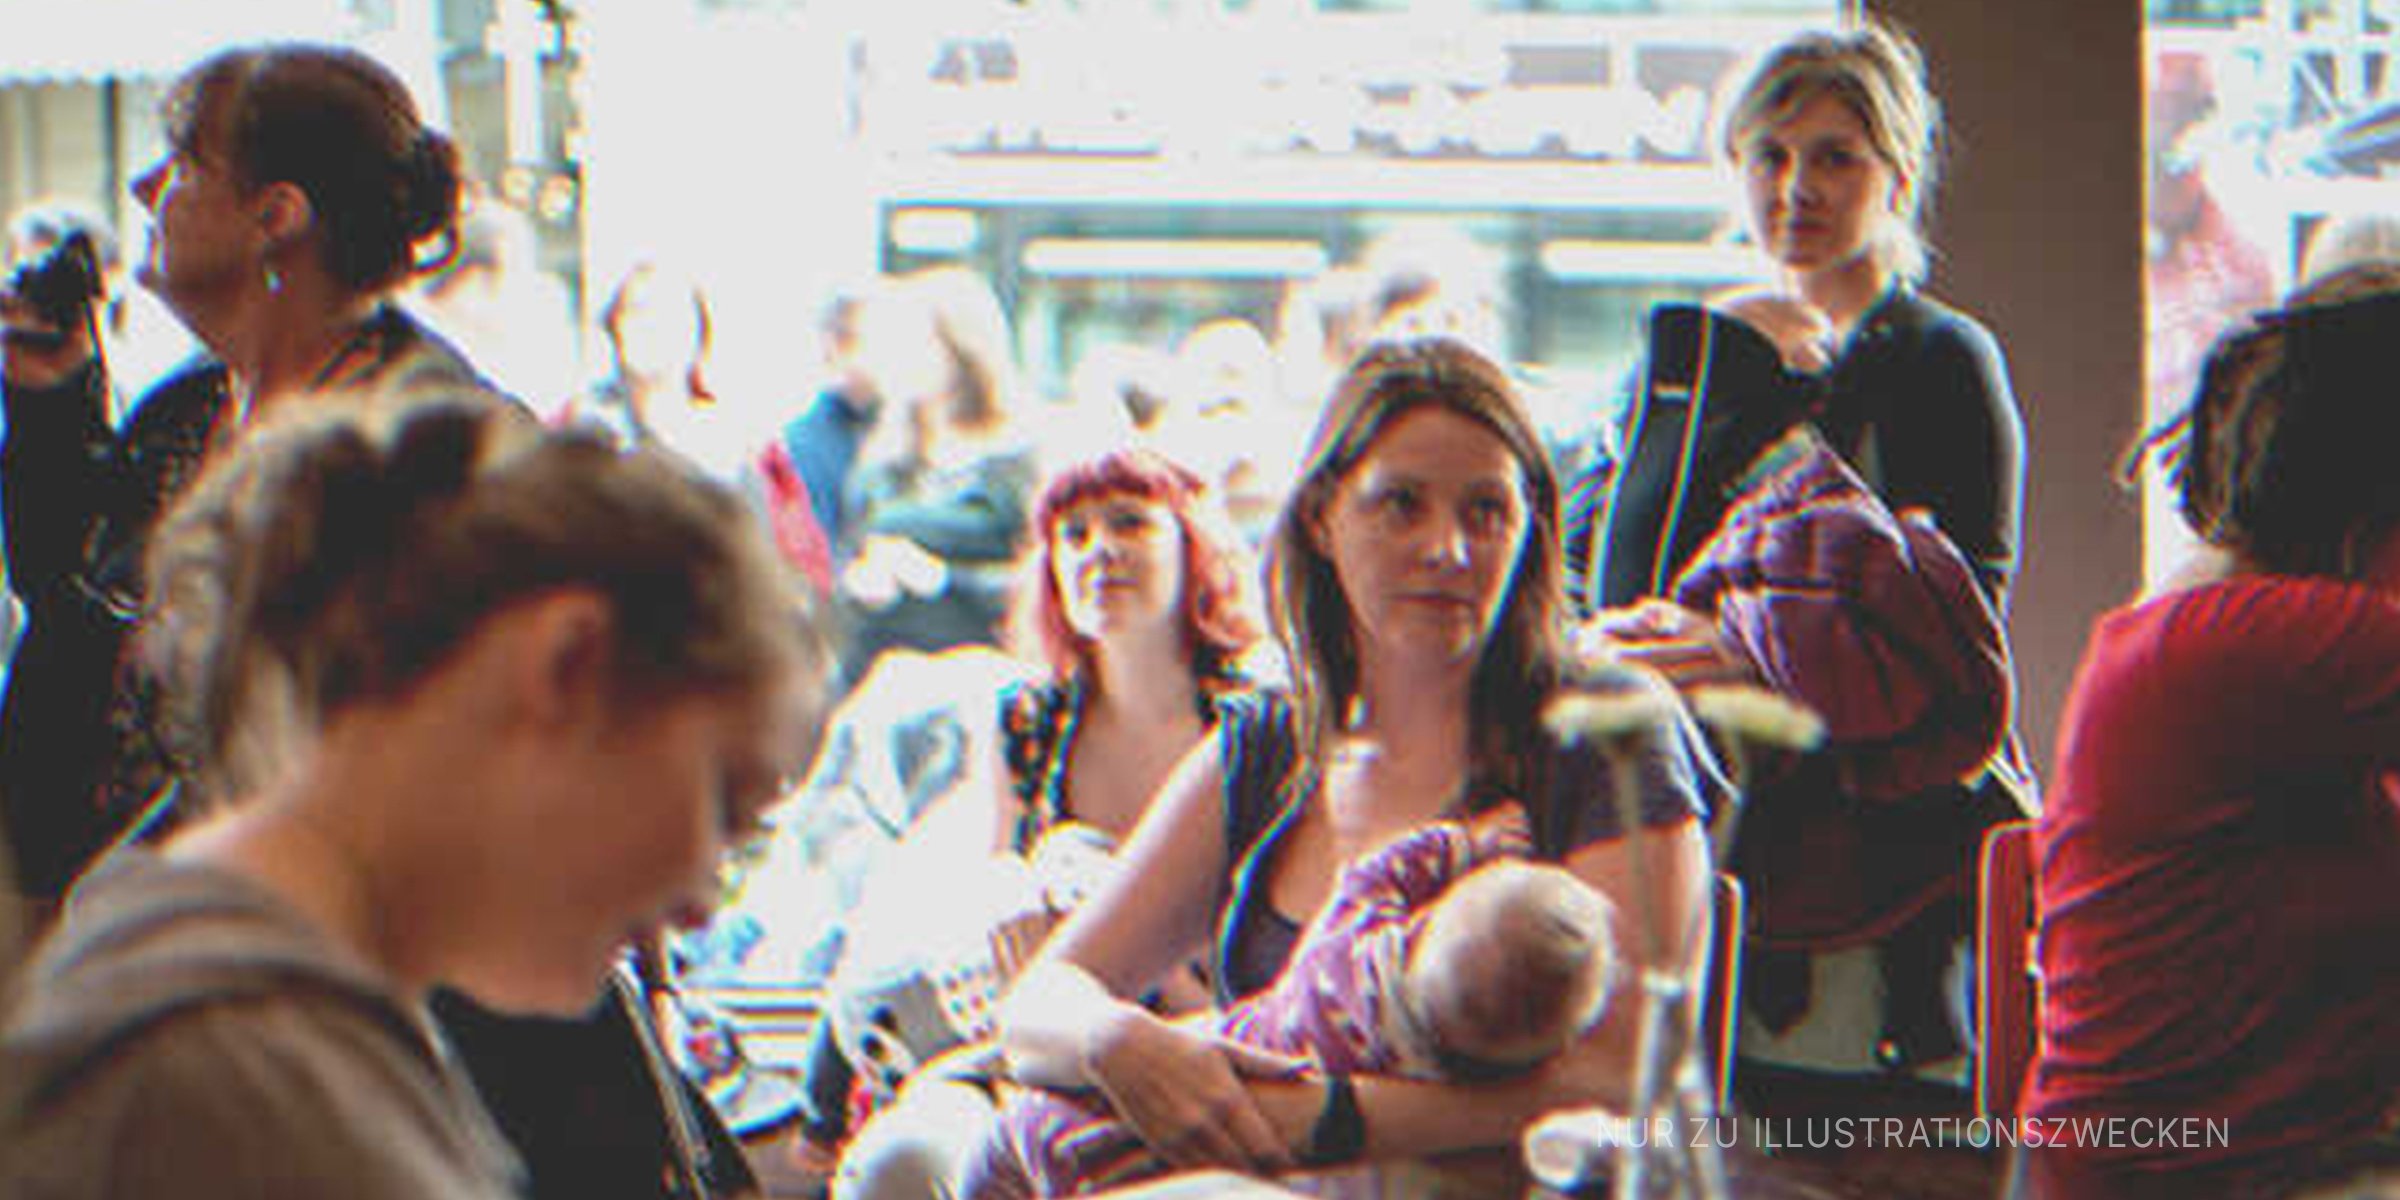 Frau stillt ihr Baby in einem Café. | Quelle: flickr/dailycloudt (CC BY-SA 2.0)